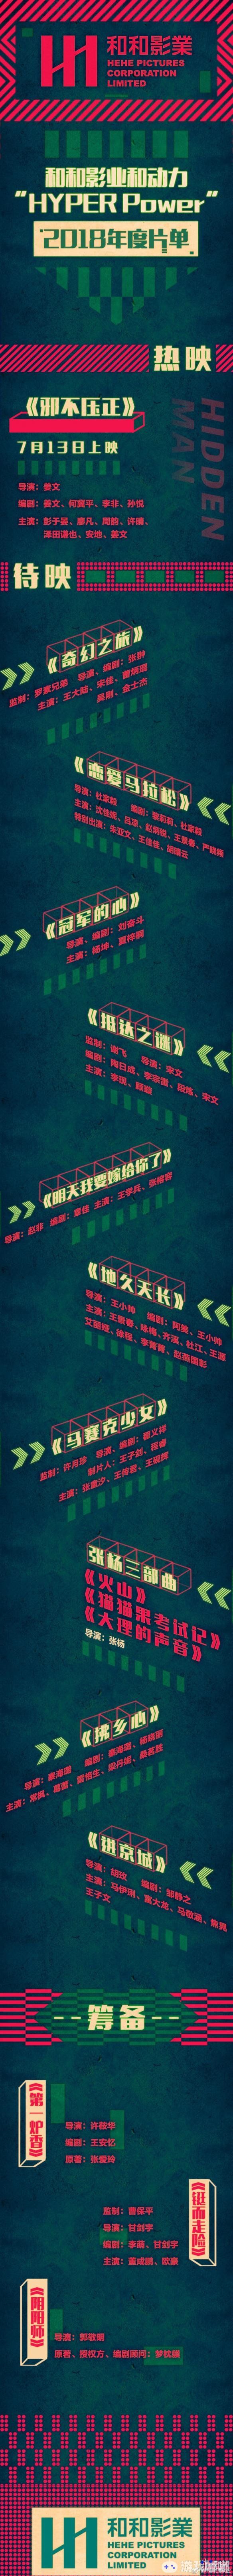 和和影业2018和动力年度片单公布，由郭敬明导演的筹备项目《阴阳师》也在其中，不知道大家对这部电影有什么看法呢？